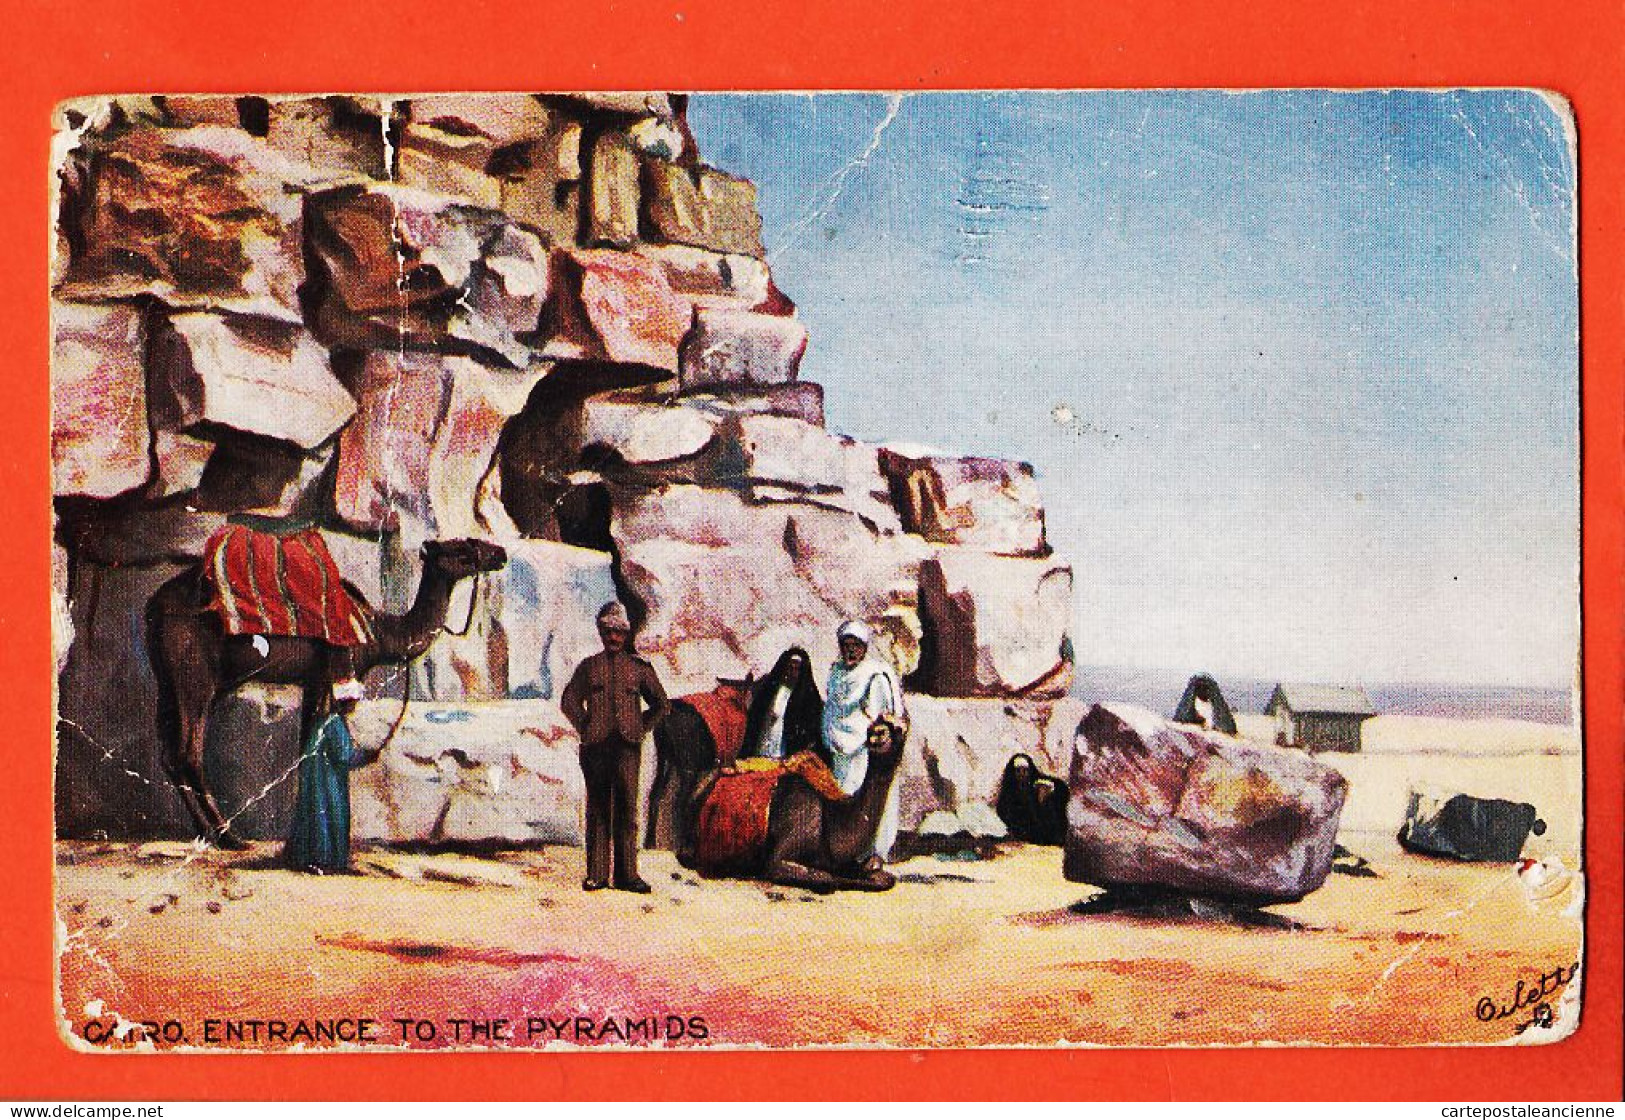 08045 ● CAIRO Entrance To The Pyramids Le CAIRE Entrée Pyramides 27-02-1911 à Suzanne LAMBA Raphael TUCK OILETTE - Pyramids